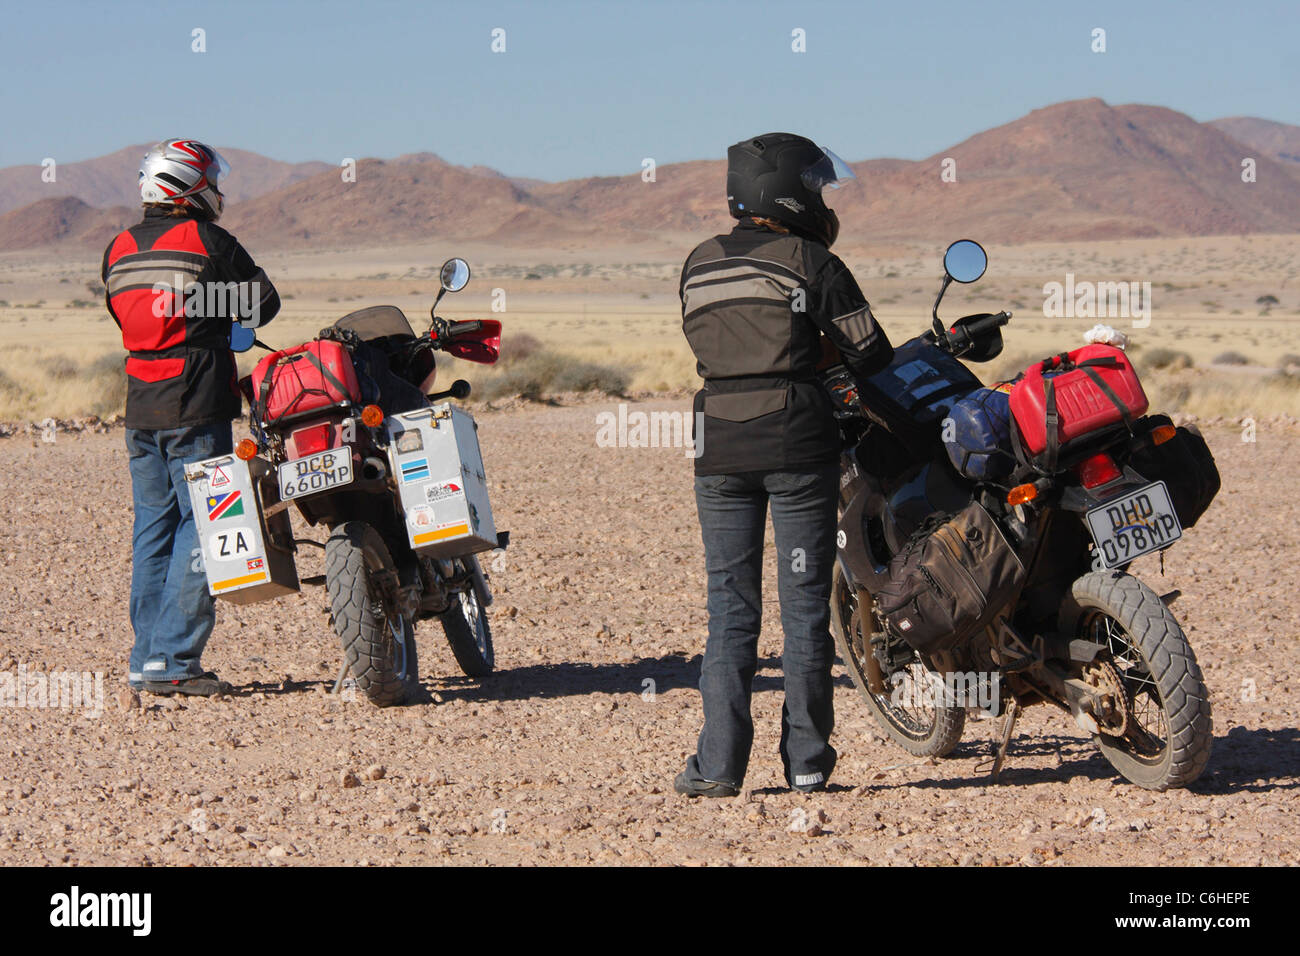 Les motocyclistes se reposant dans aride Banque D'Images